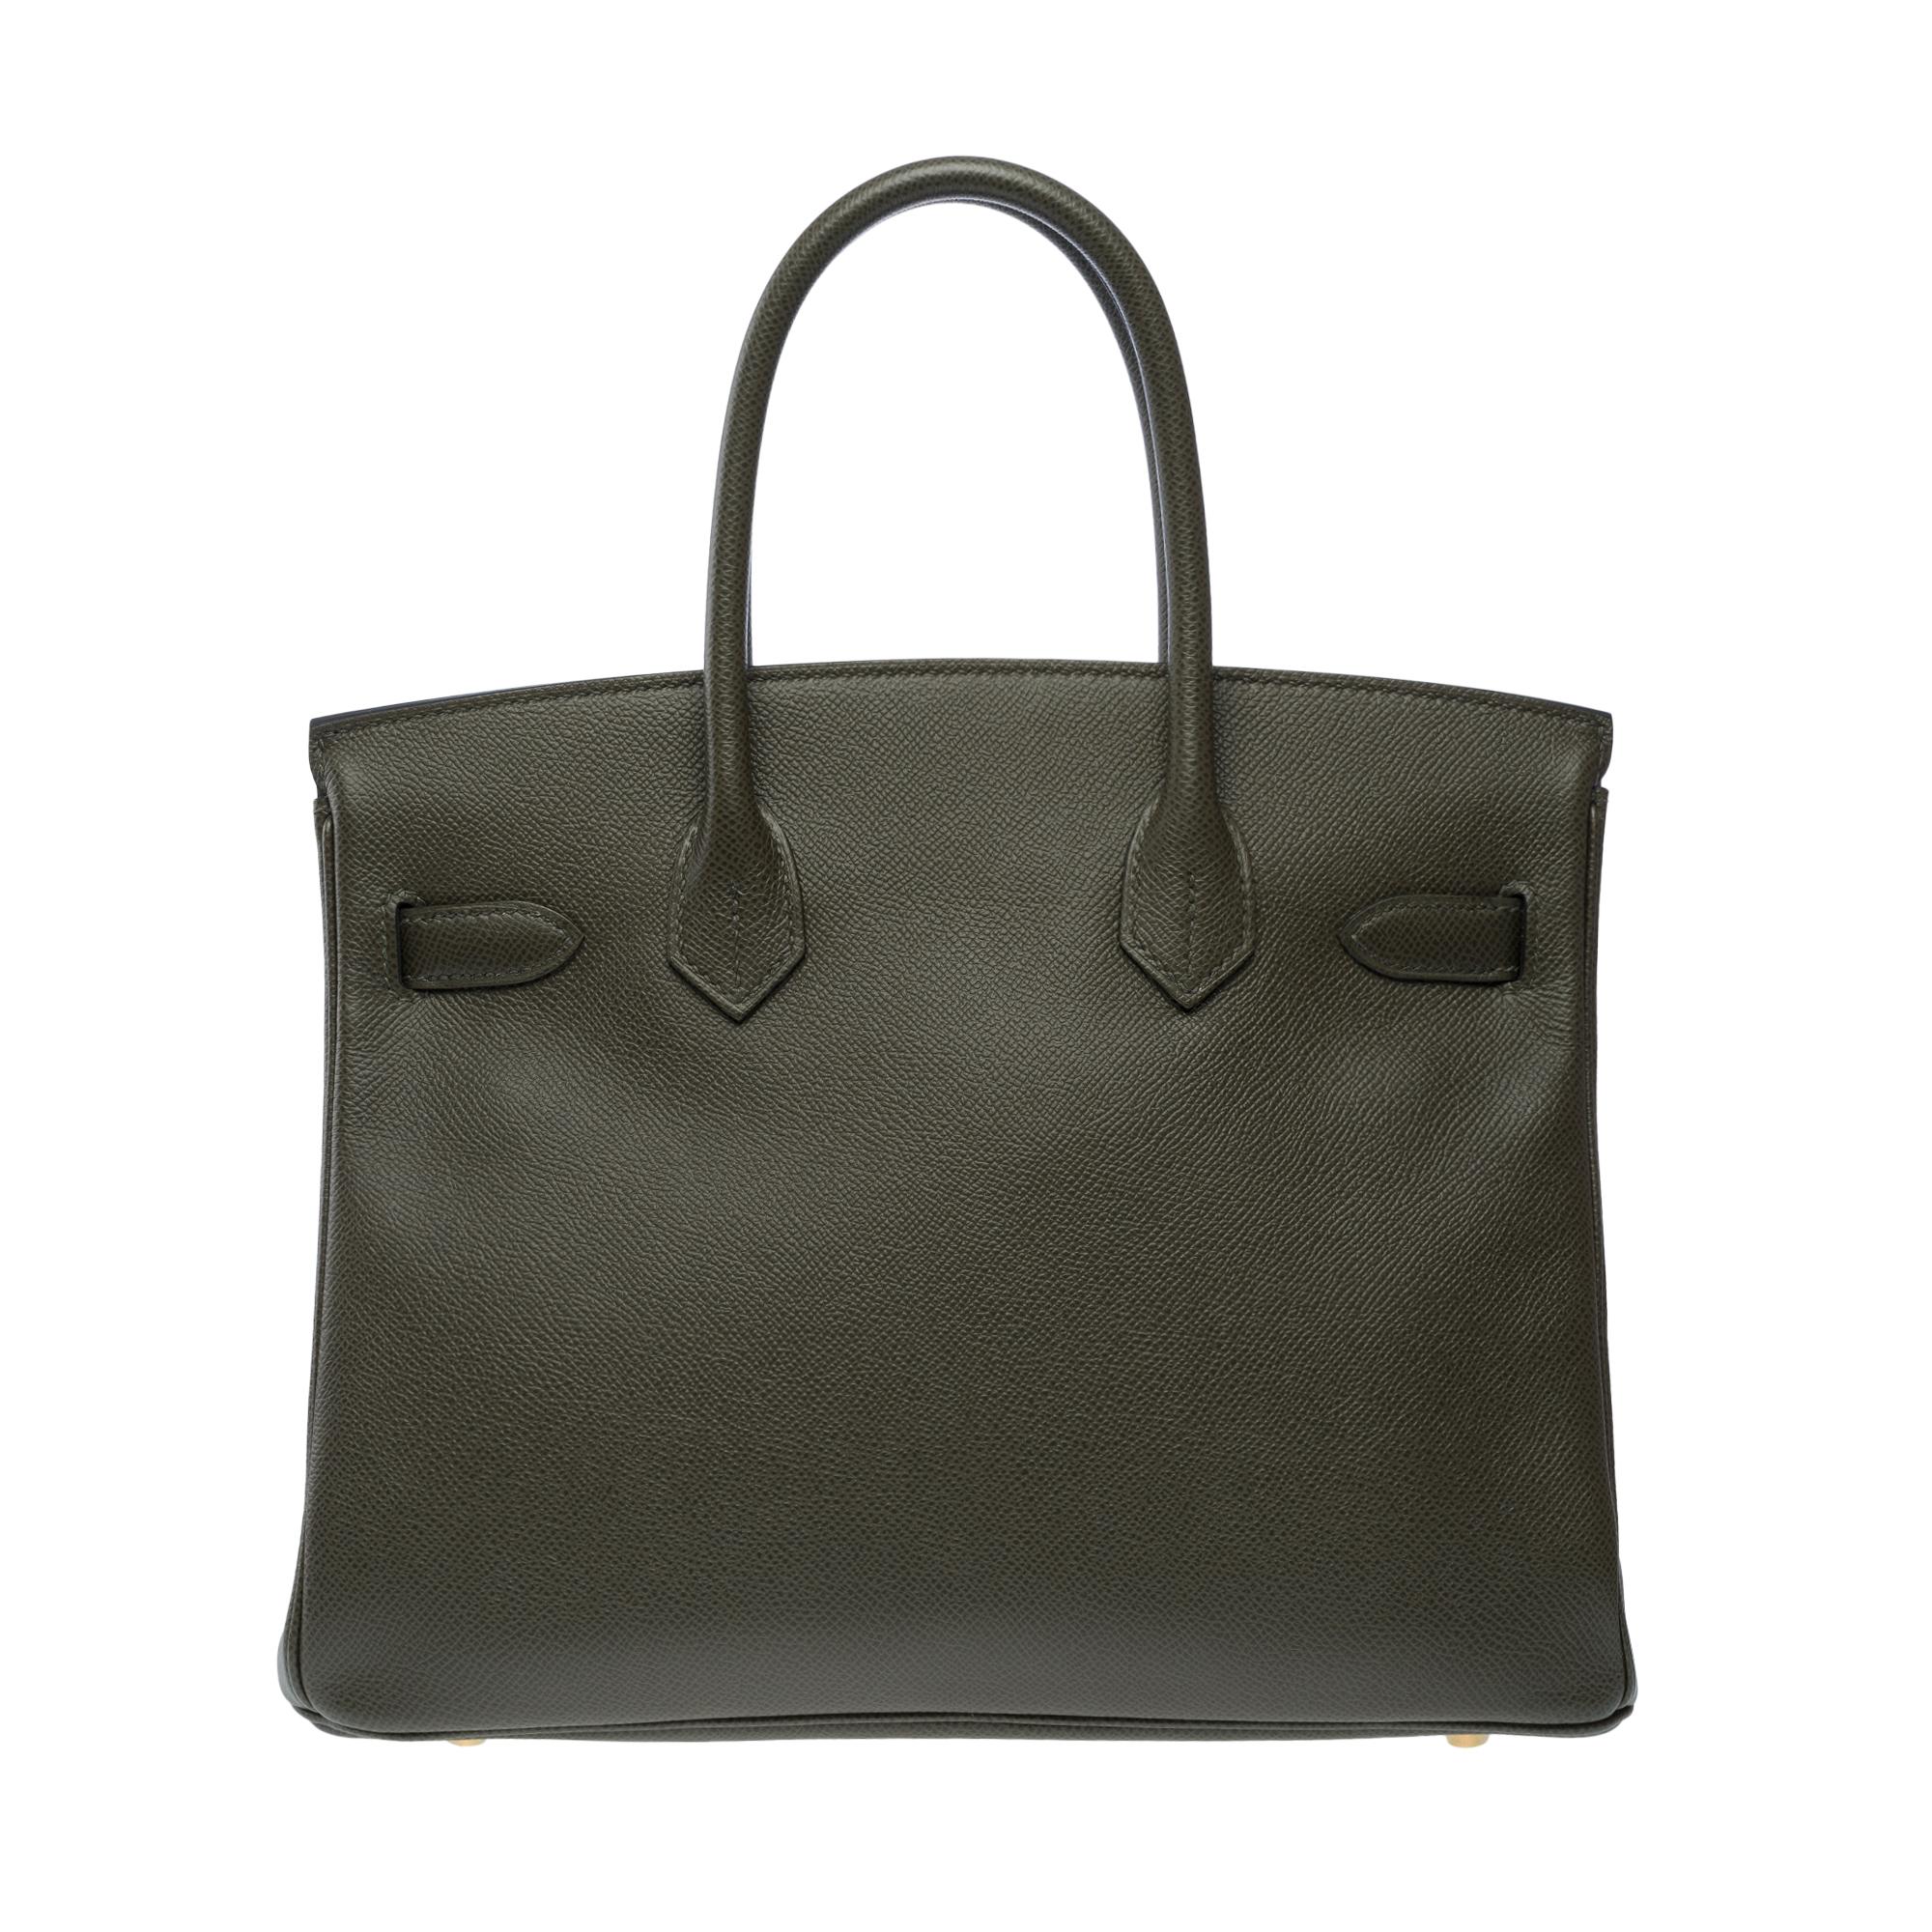 Gray Splendid Hermes Birkin 30 handbag in Vert de Gris Epsom leather, SHW For Sale